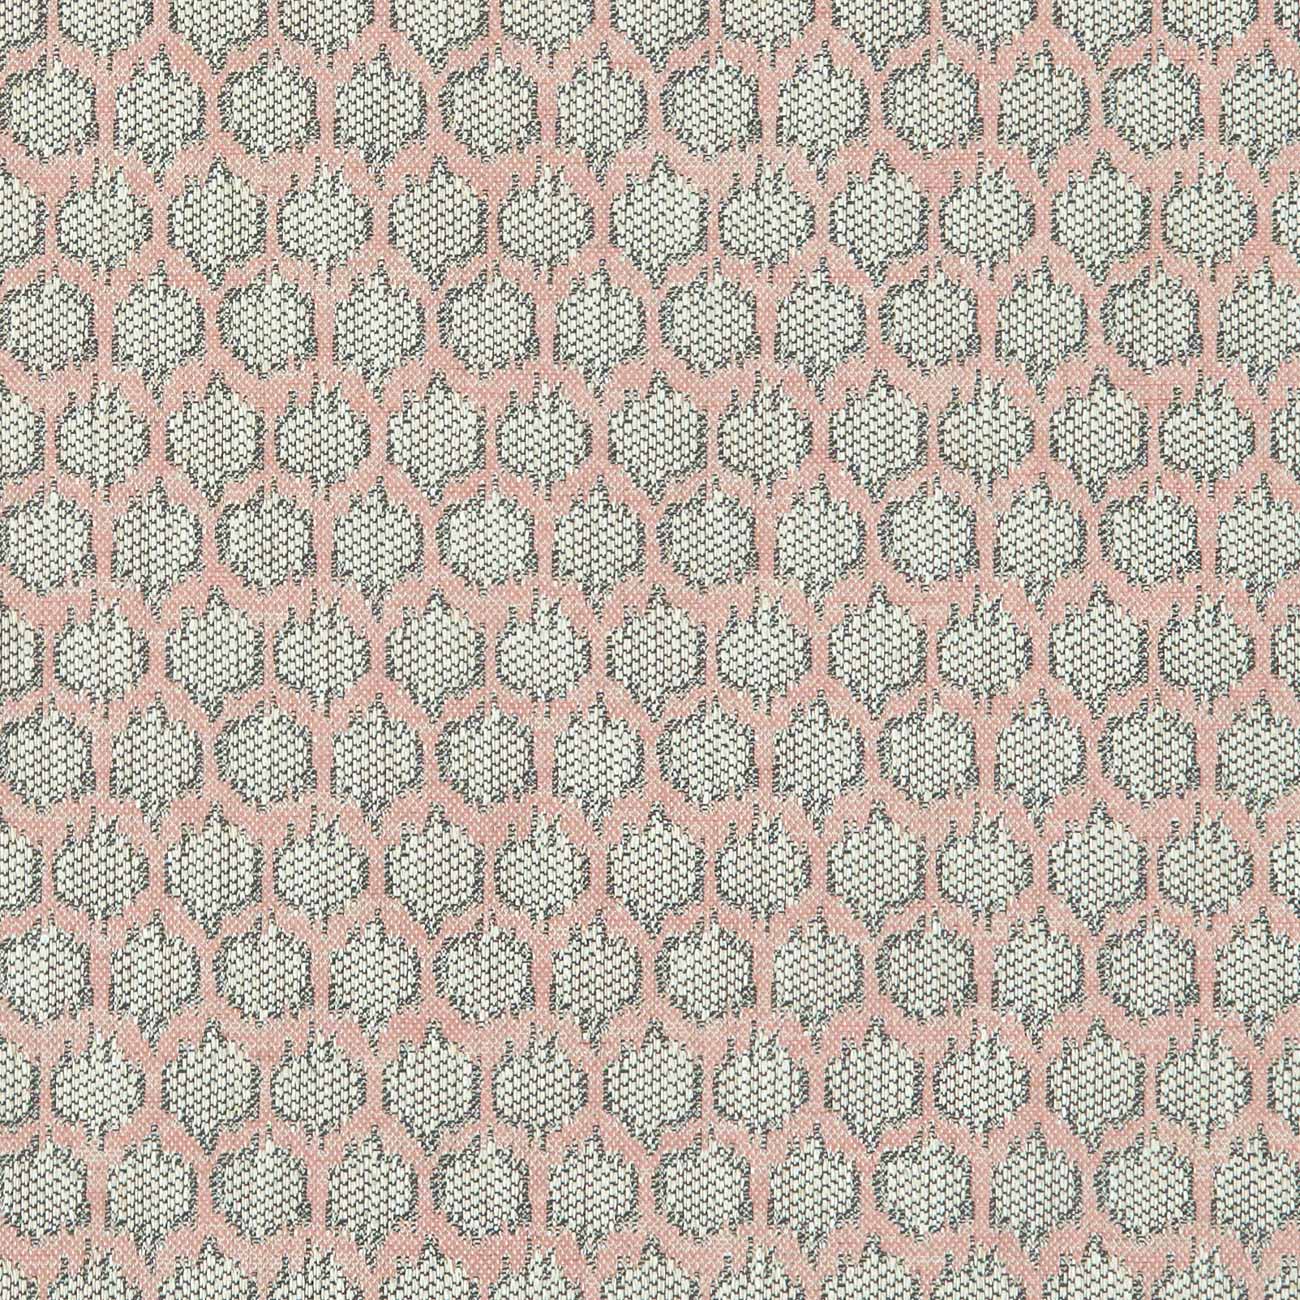 Dorset Blush Fabric by Clarke & Clarke